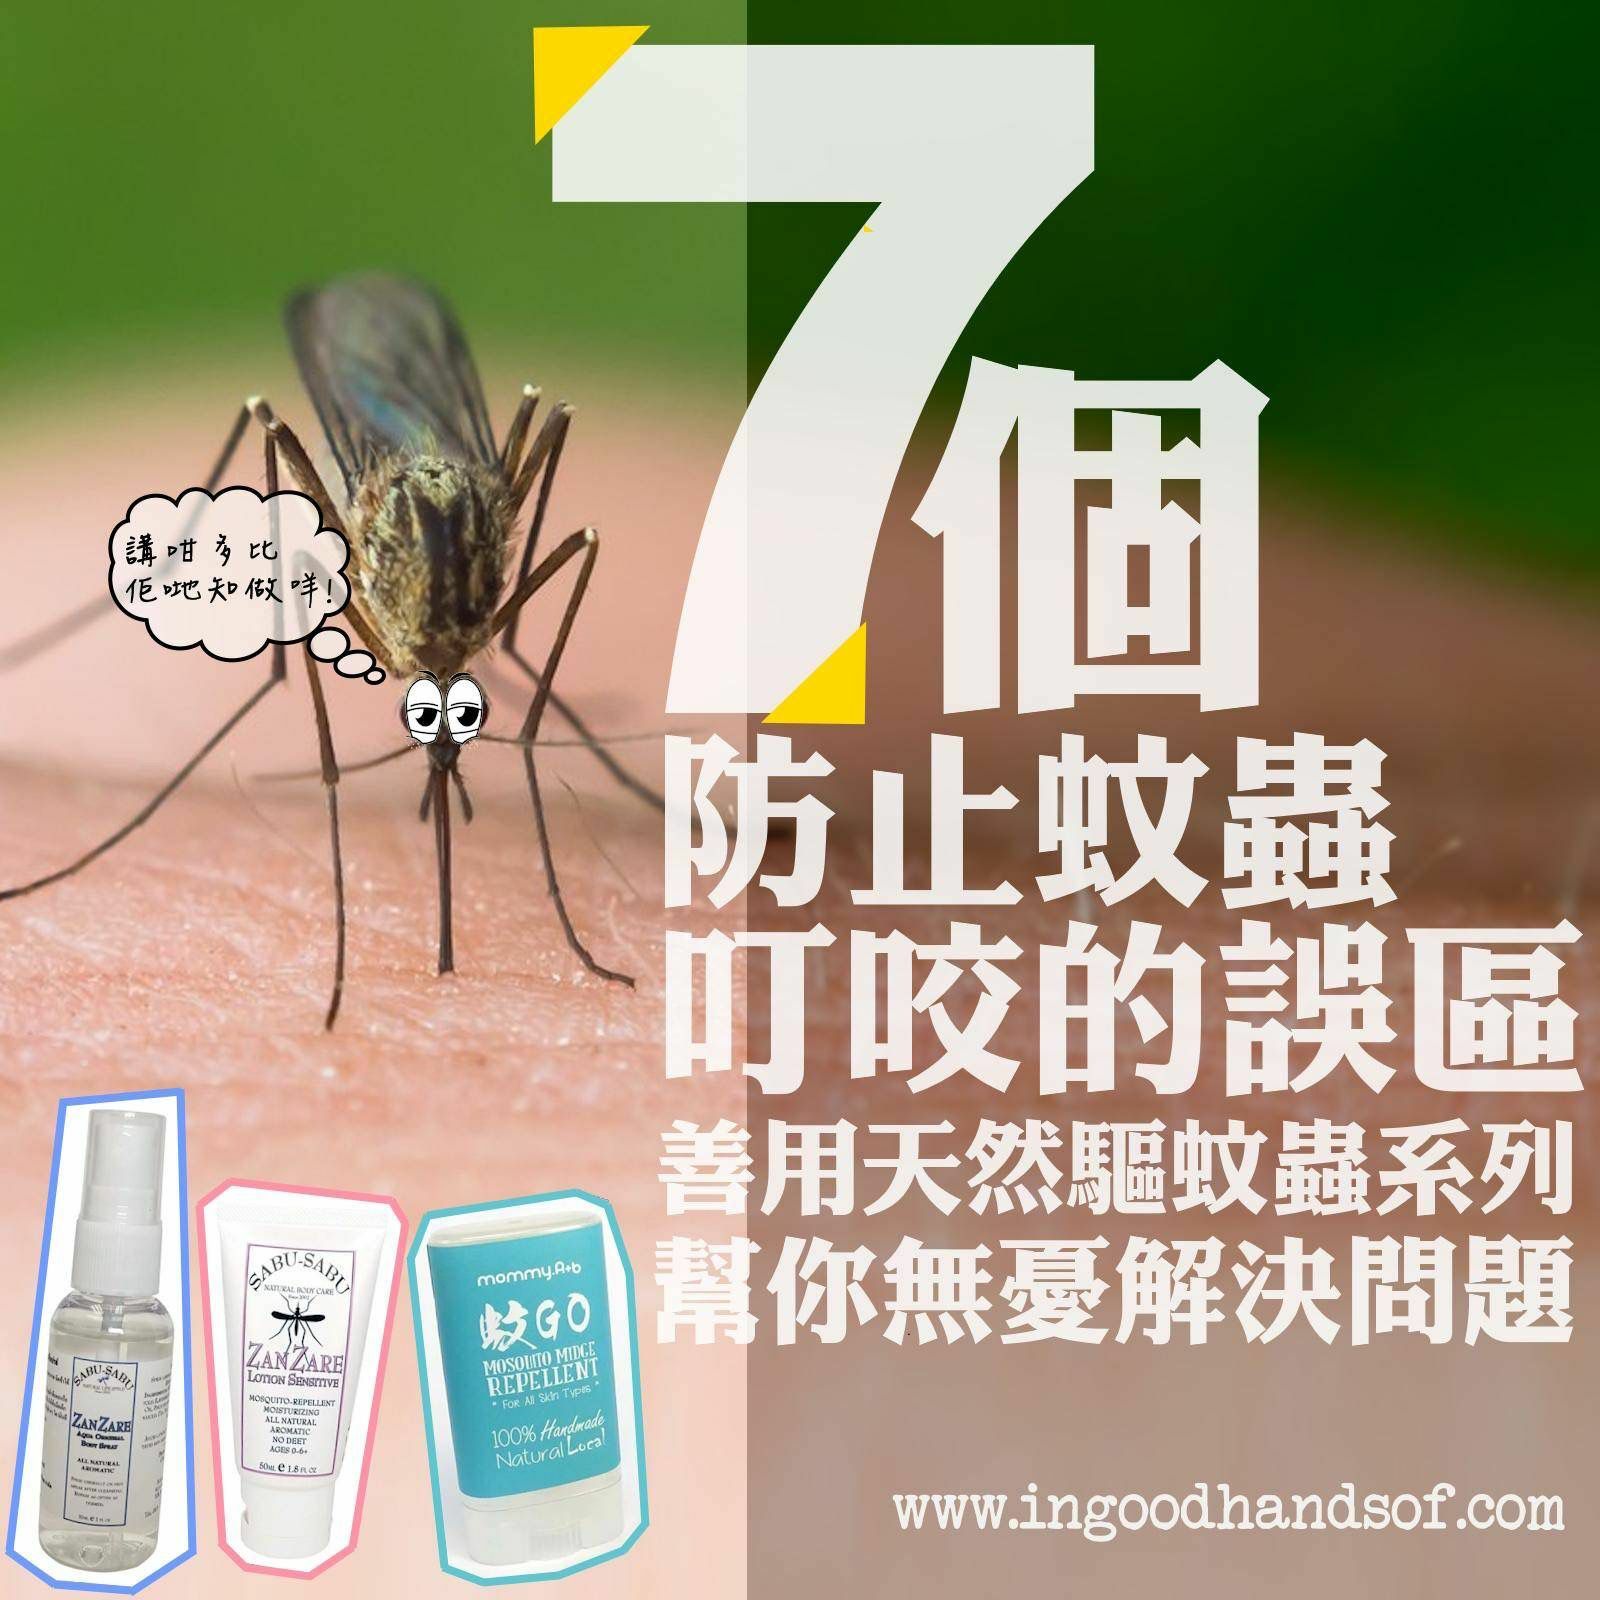 夏季蚊蟲活躍成為了我們最大的困擾之一, 許多人都會採取措施來防止蚊蟲叮咬